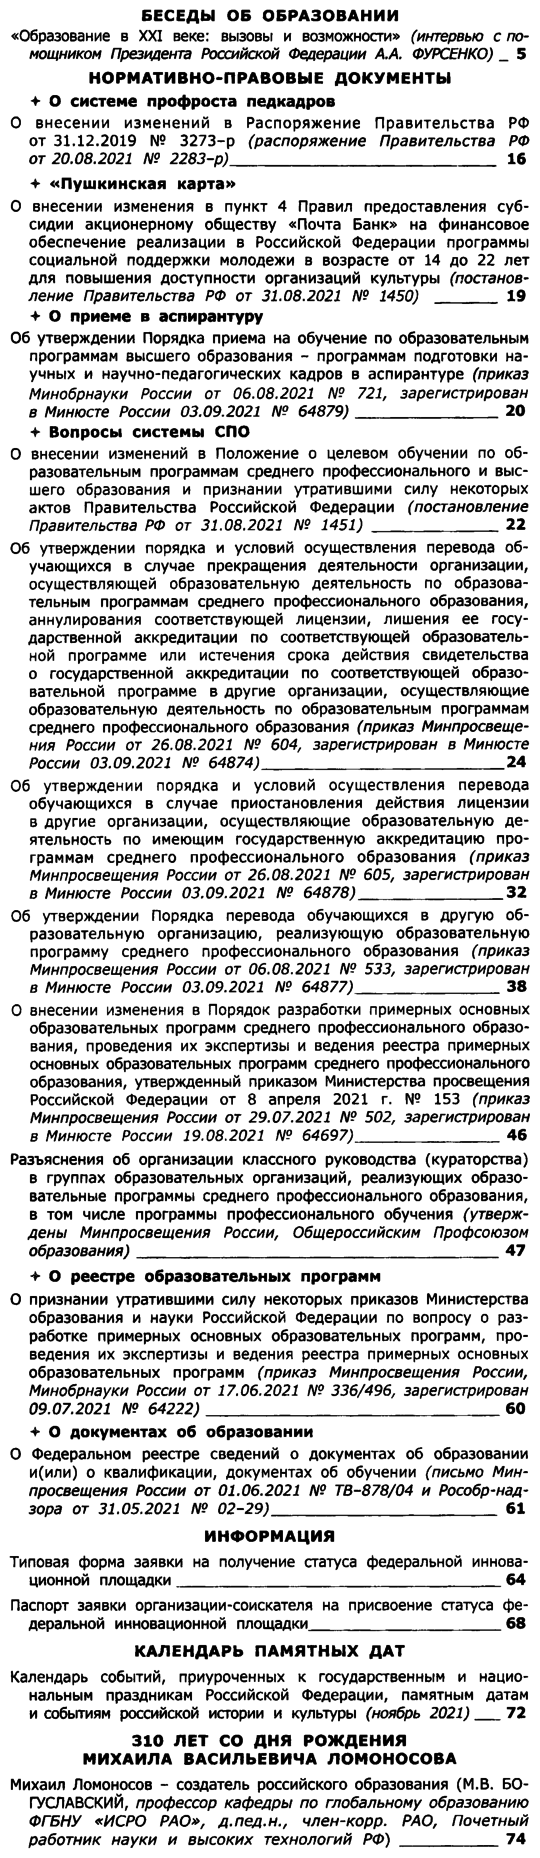 Вестник образования России 2021-20.png